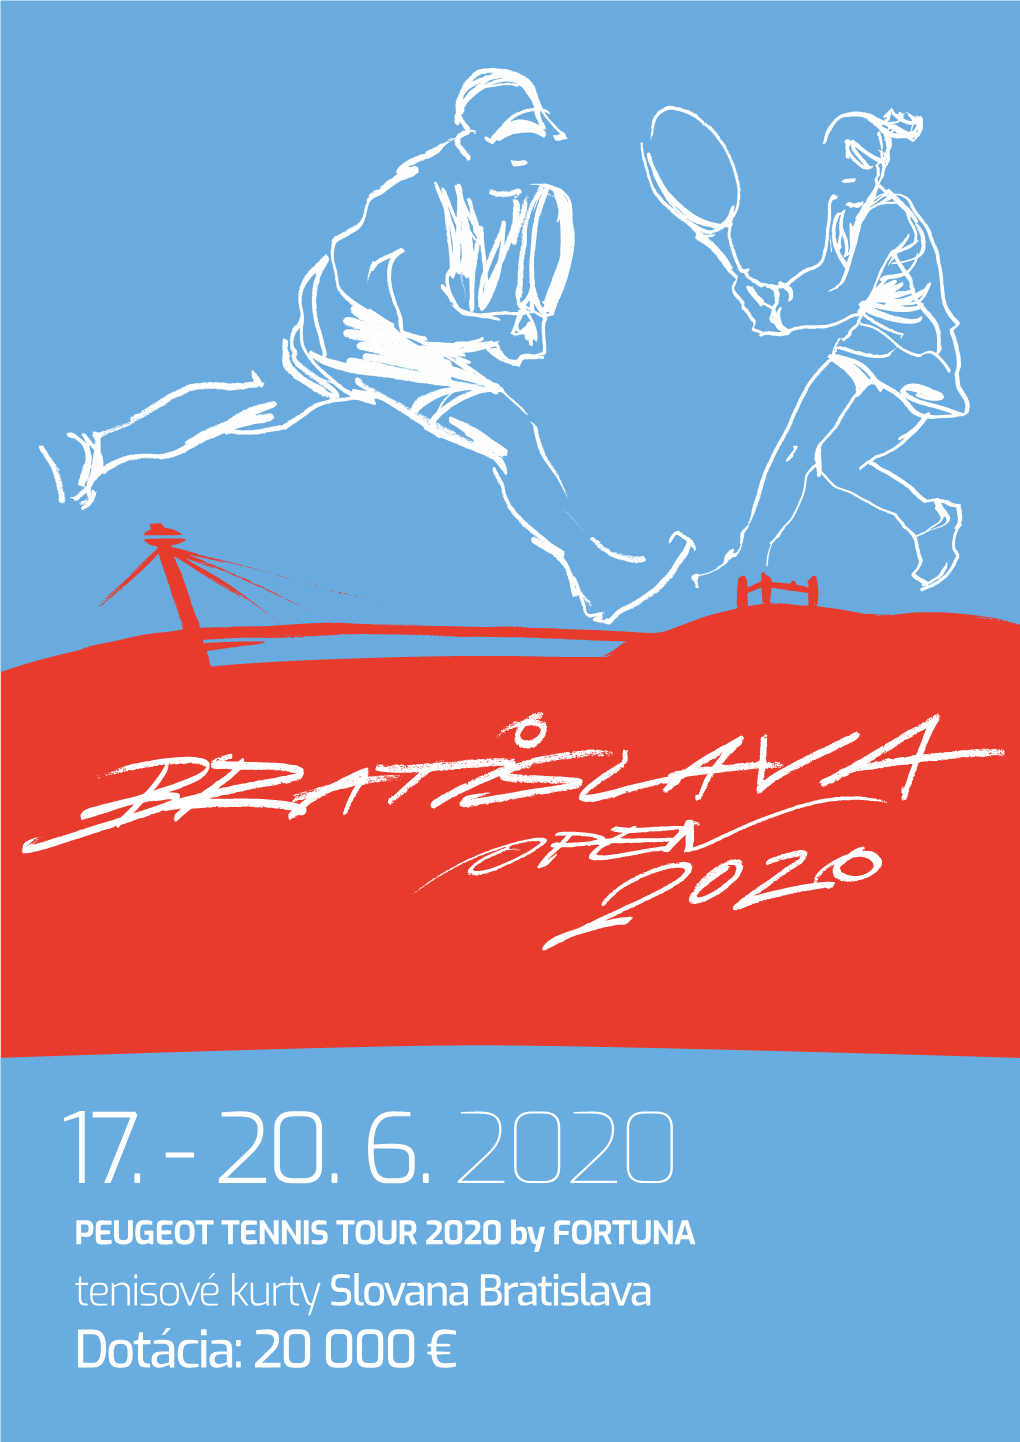 PEUGEOT TENNIS TOUR 2020 by FORTUNA Tenisové Kurty Slovana Bratislava Dotácia: 20 000 € BRATISLAVA OPEN 2020, BRATISLAVA PREHLIADKA NAJLEPŠÍCH OPEN 2020